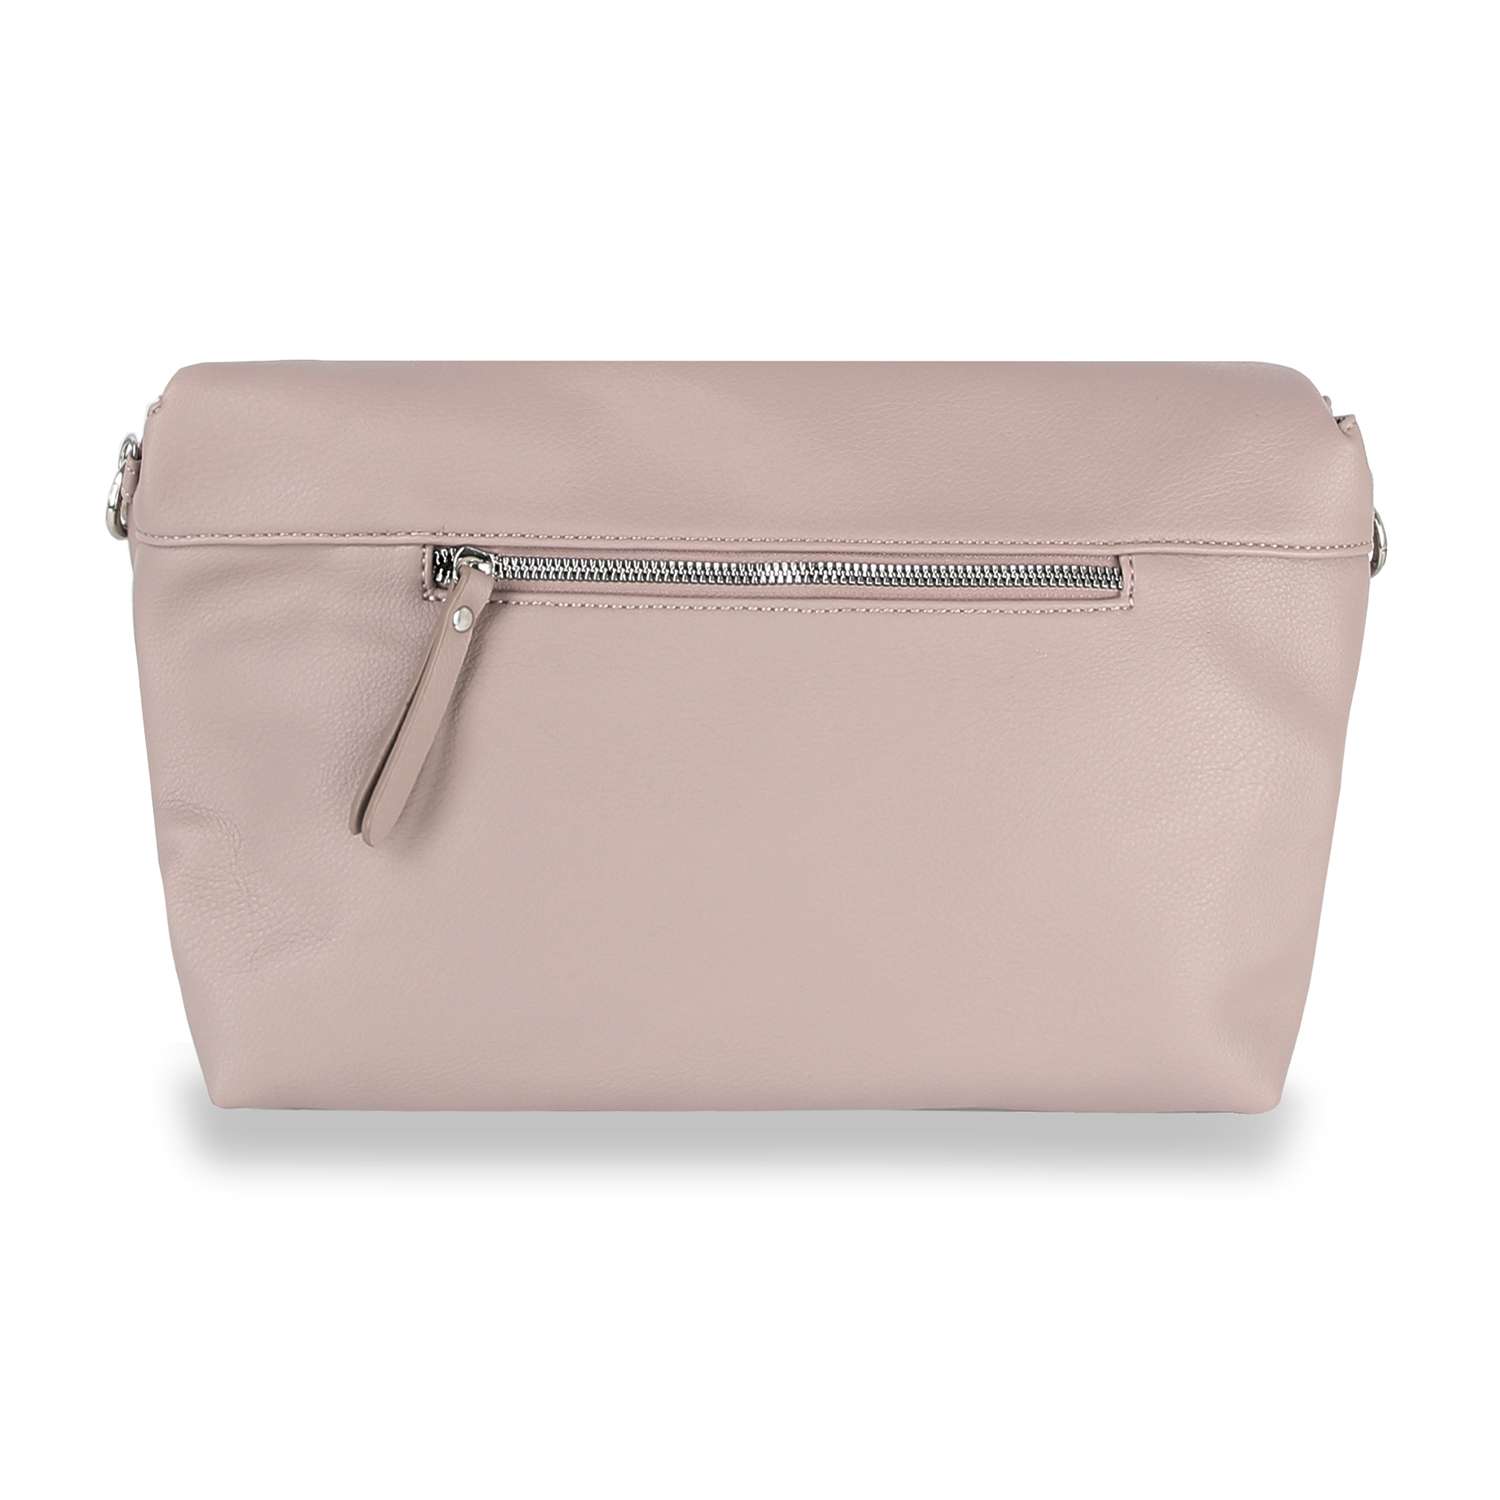 Victoria Secret Pink Handbag Purse Top Handles... - Depop